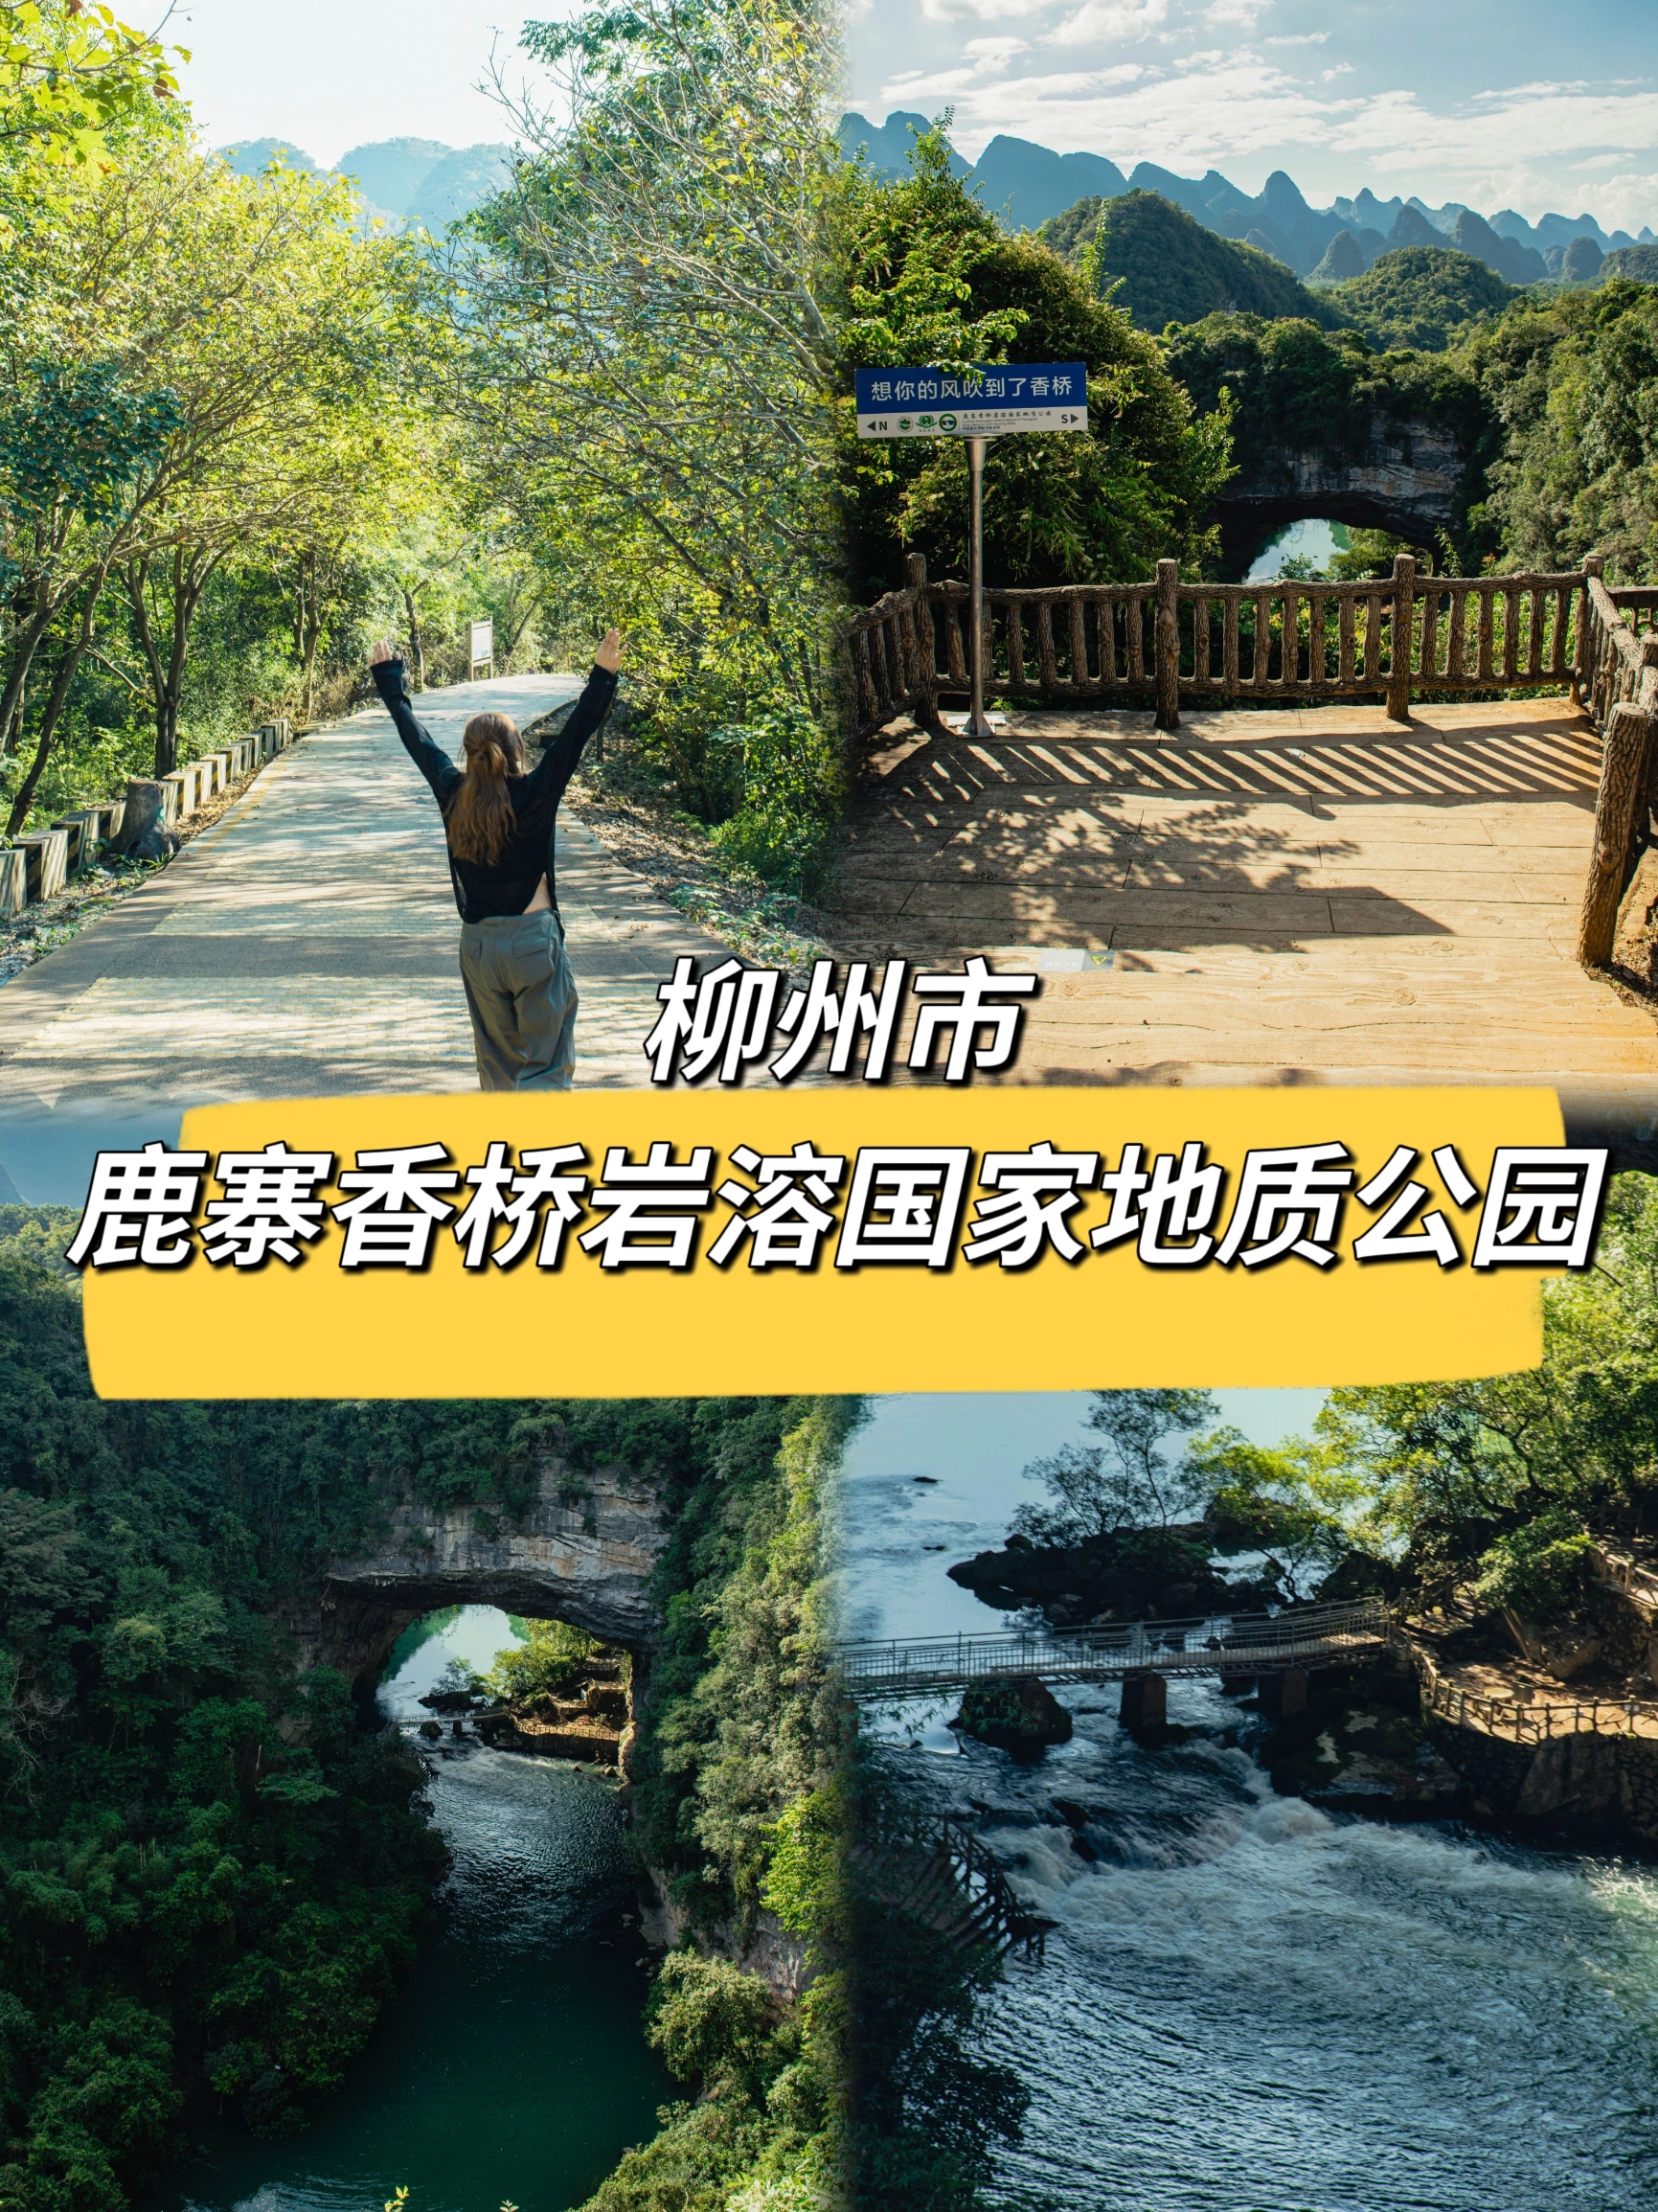 广西香桥岩溶国家地质公园于2005年9月被授予国家地质公园称号，并于2013年9月被评为“中国最美地